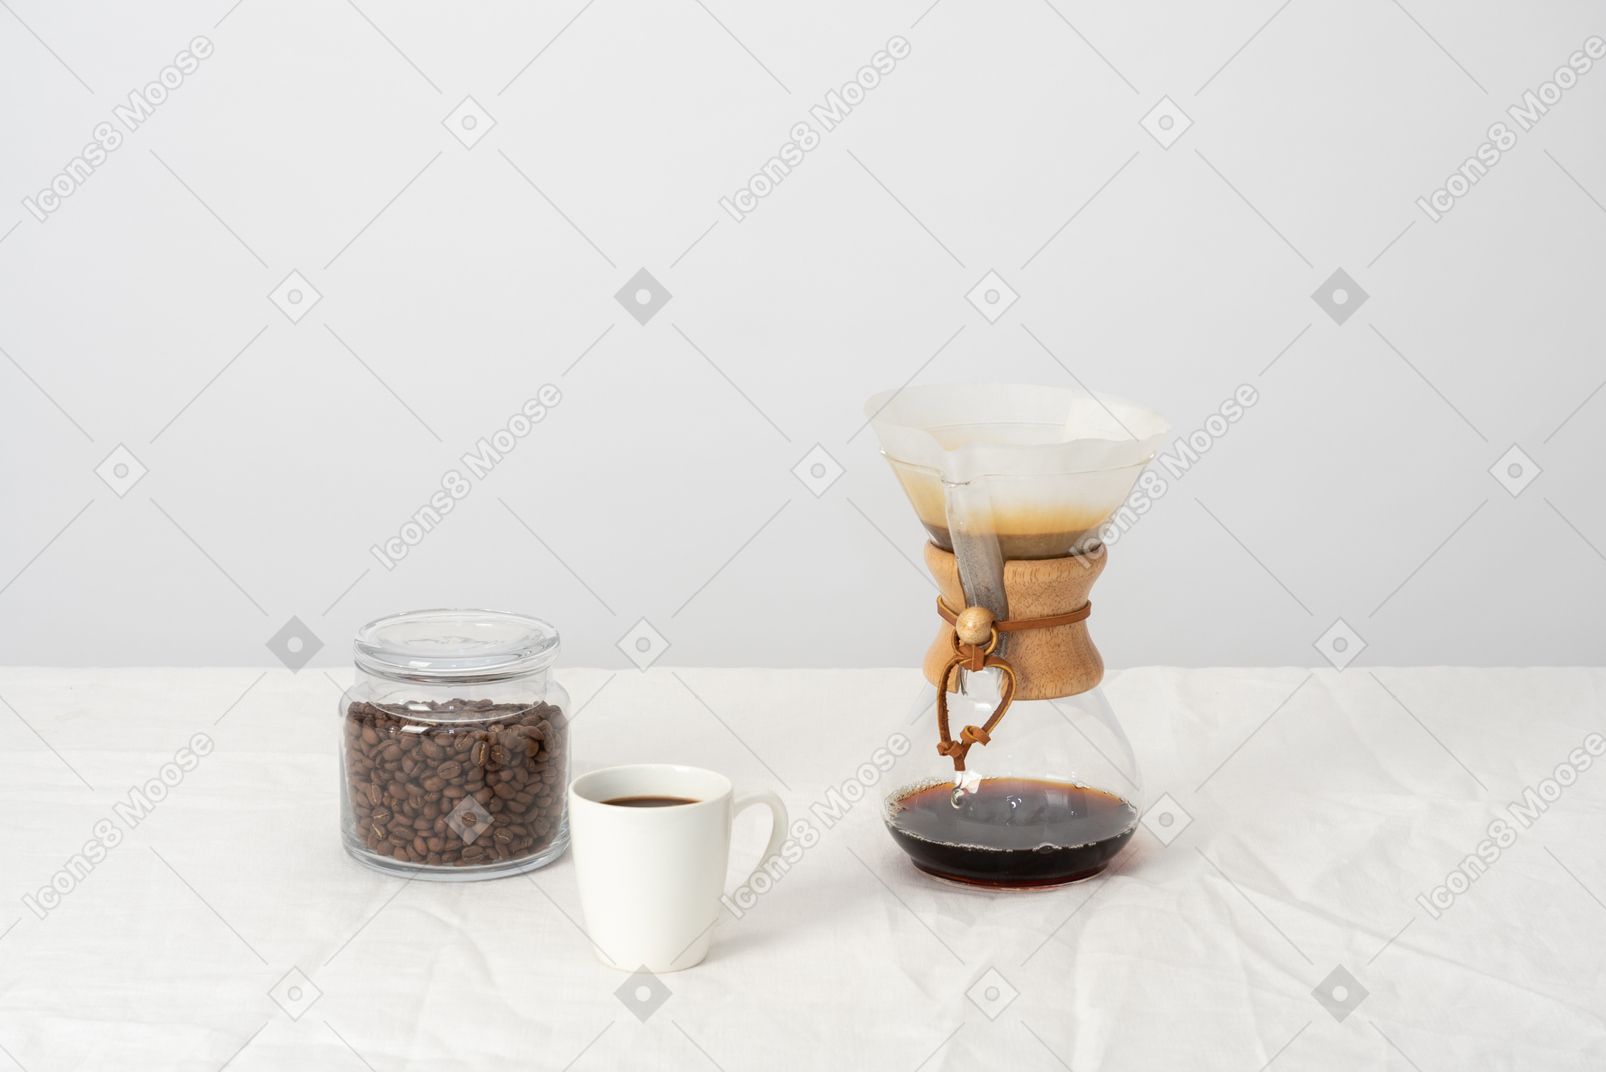 Chemex, tasse de café et pot avec des grains de café